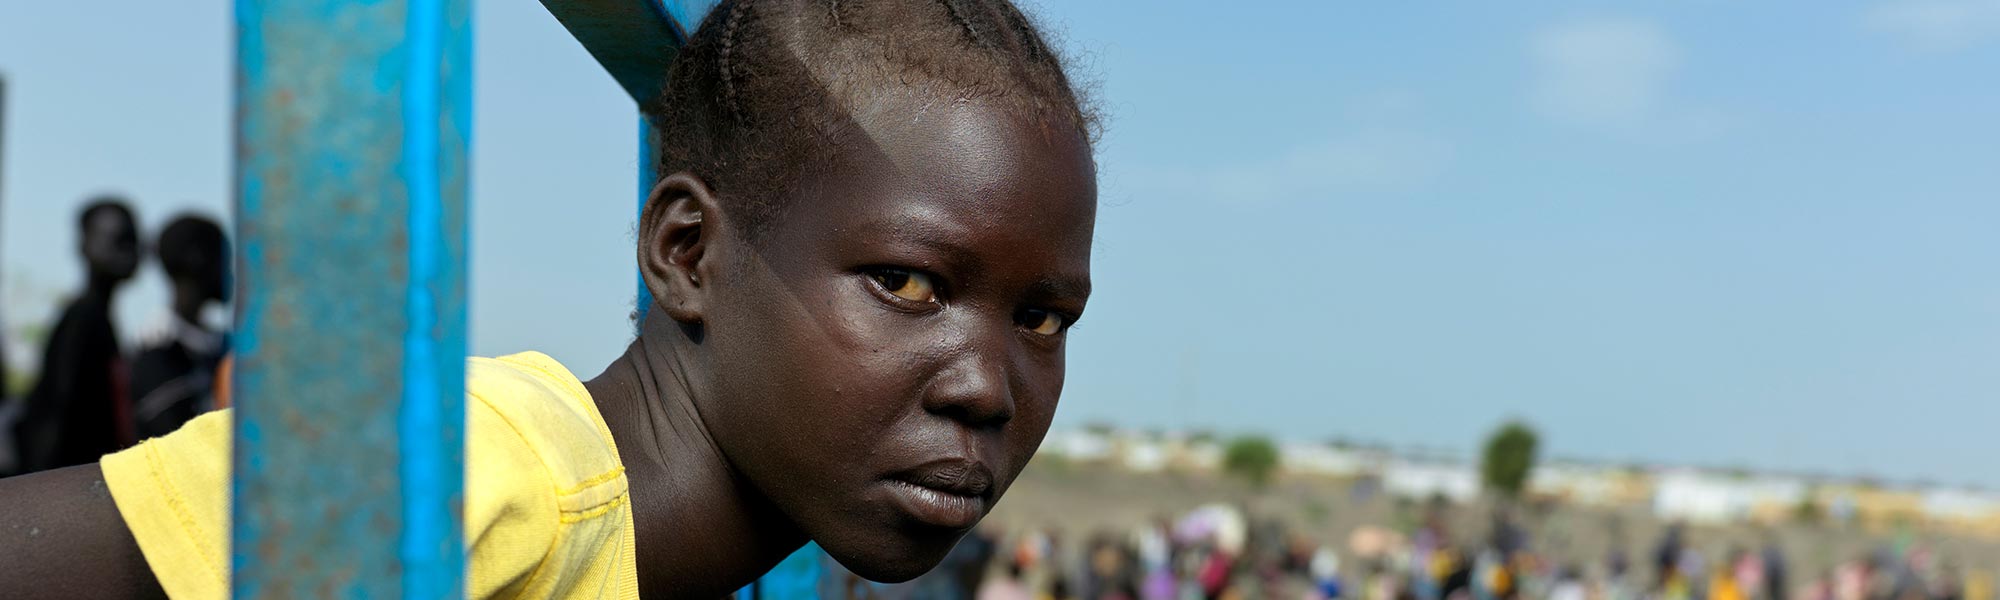 Jente på flukt i Sudan